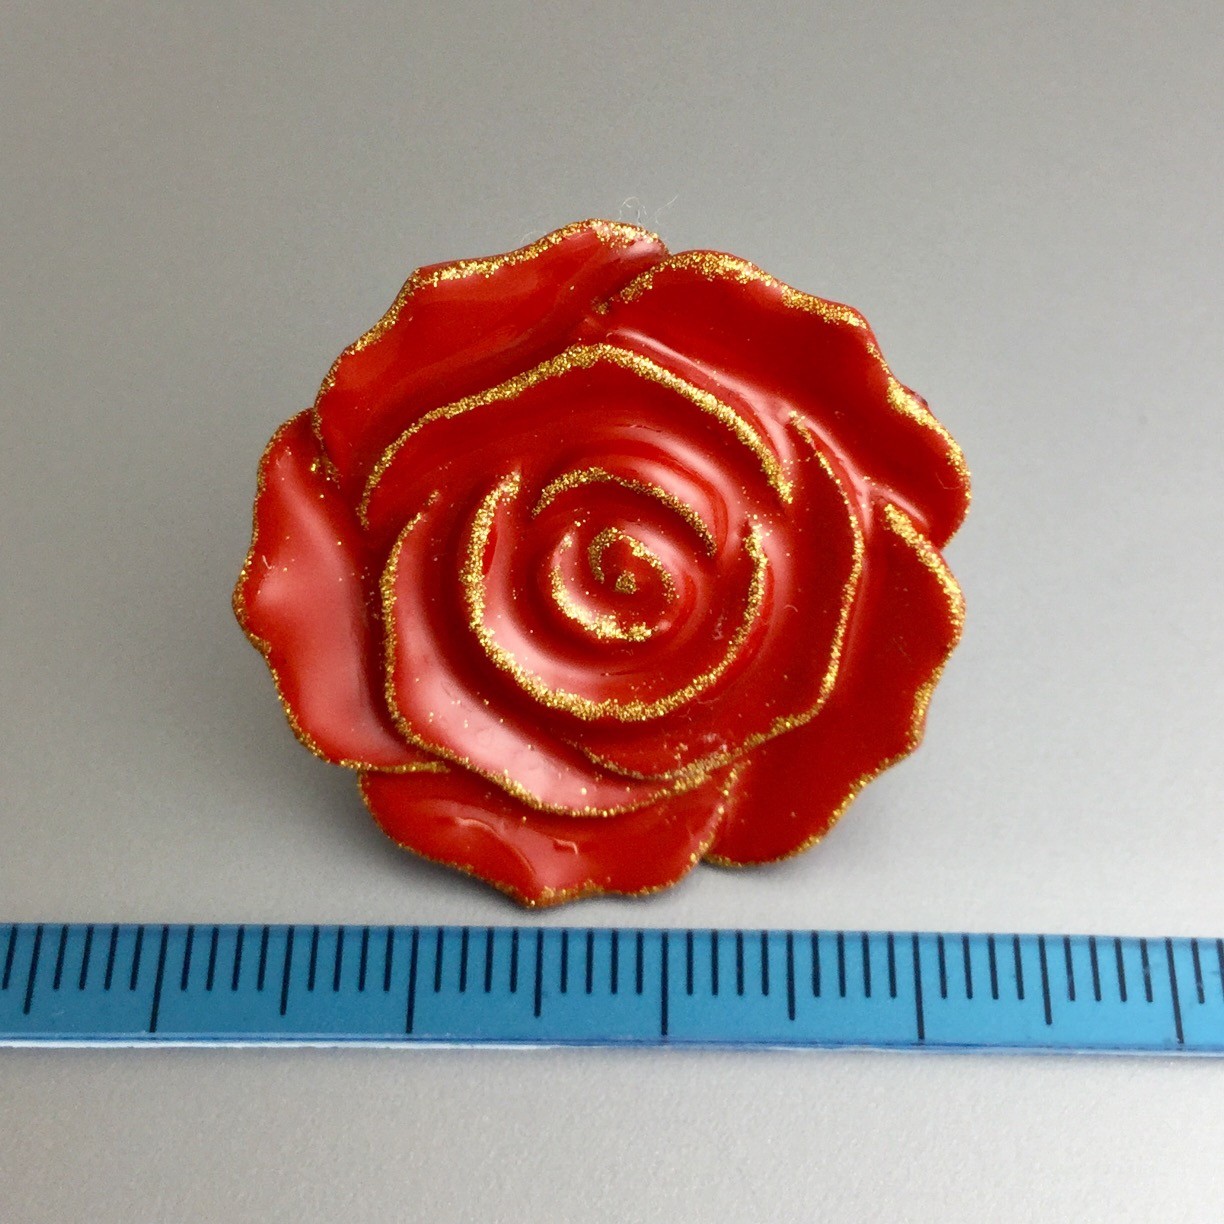 漆ピンブローチ 赤 薔薇 Iichi ハンドメイド クラフト作品 手仕事品の通販